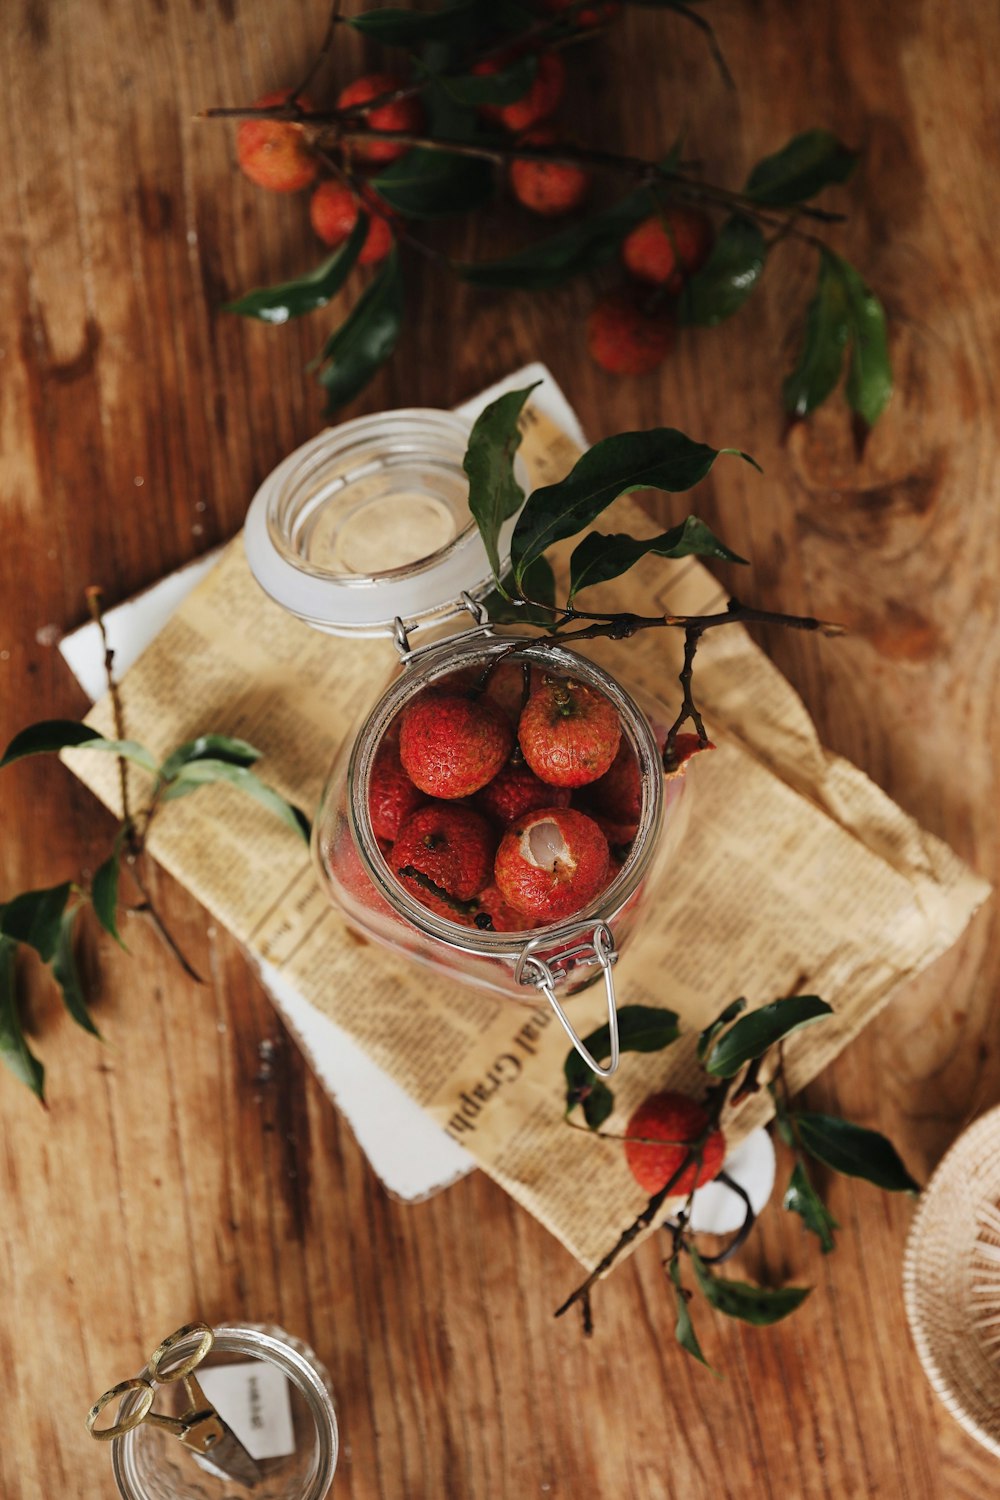 Fotografia plana de jarra de frutas vermelhas